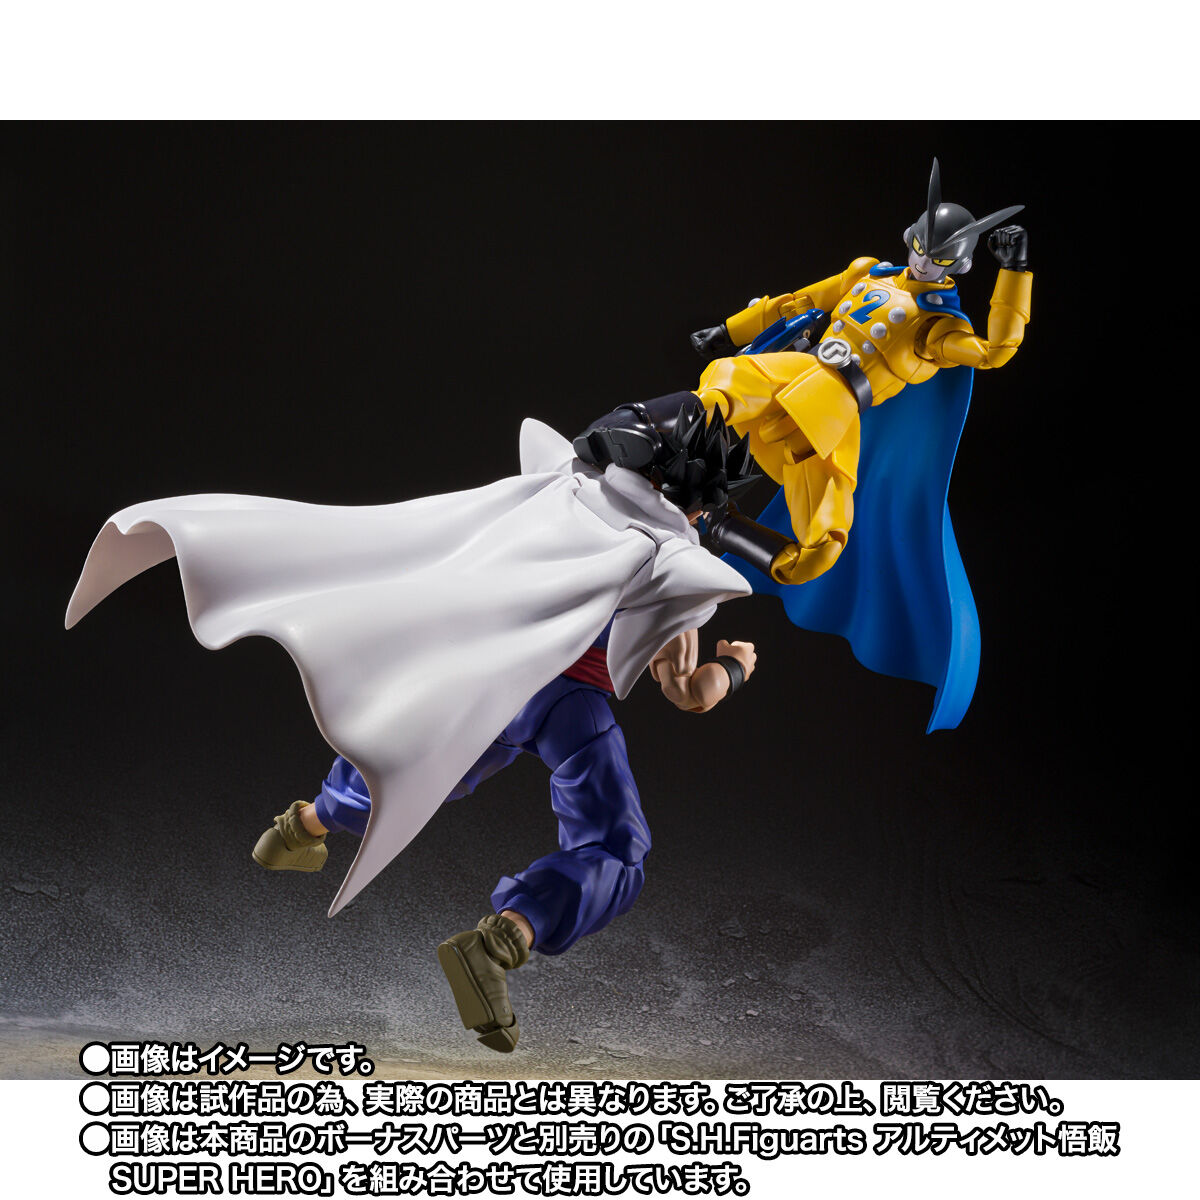 【限定販売】S.H.Figuarts『ガンマ1号』ドラゴンボール超 スーパーヒーロー 可動フィギュア-019